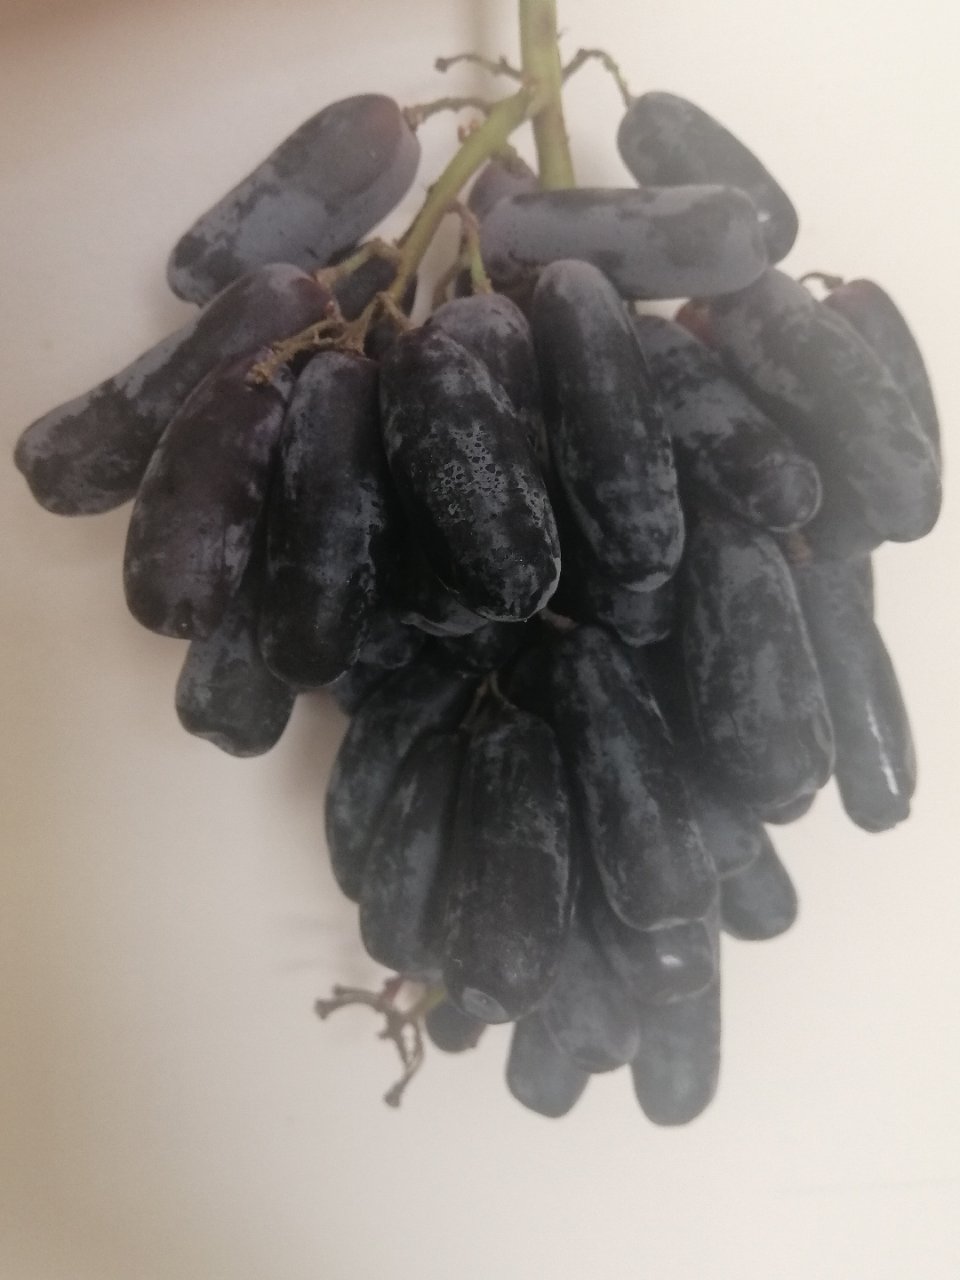 好甜的长形黑葡萄...☺...